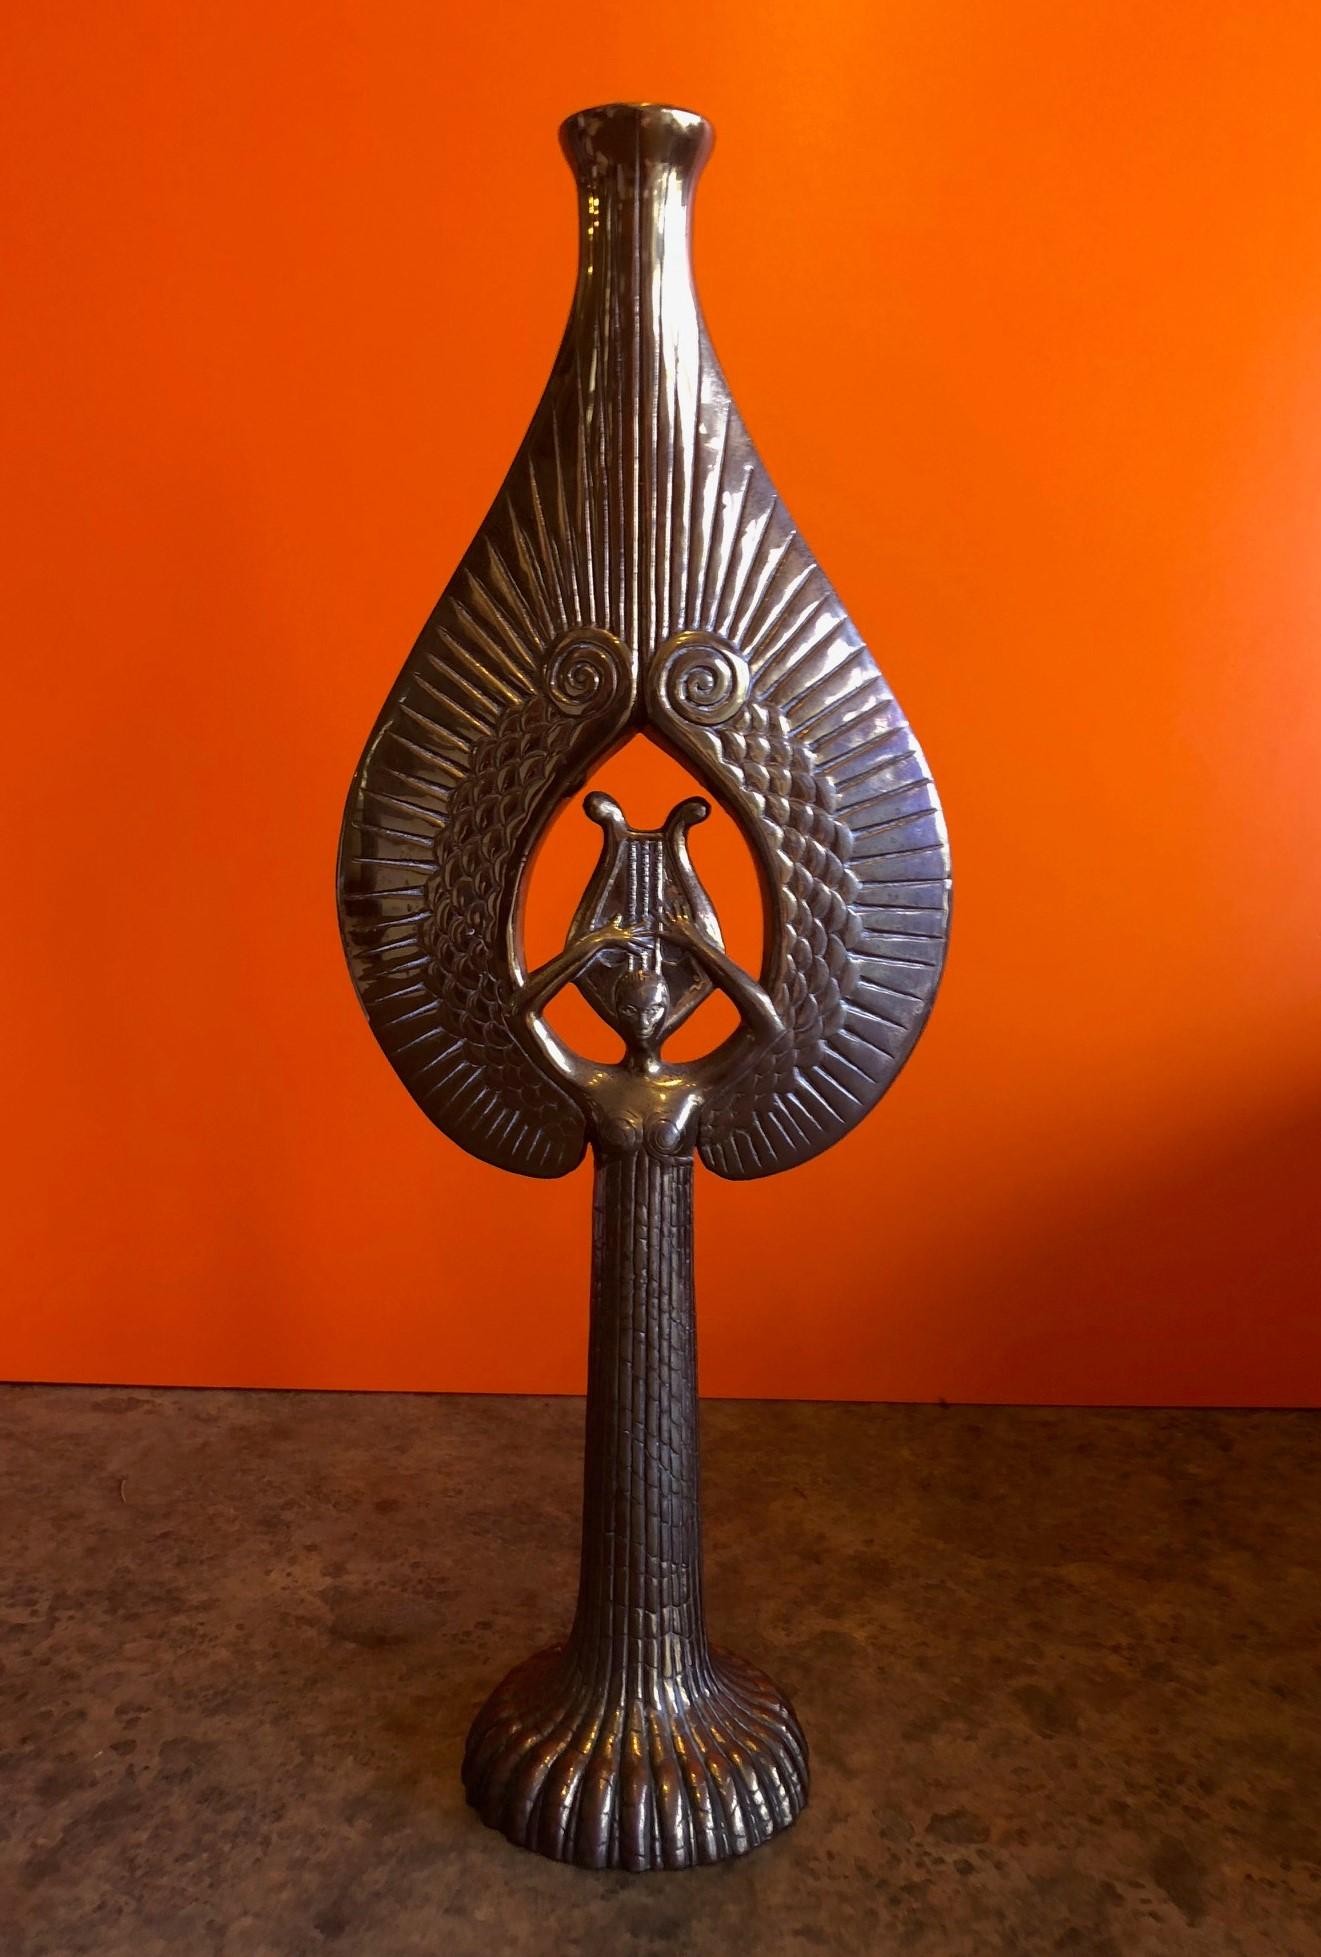 Limited edition Erté Objet d' Art bronze candle holder entitled 